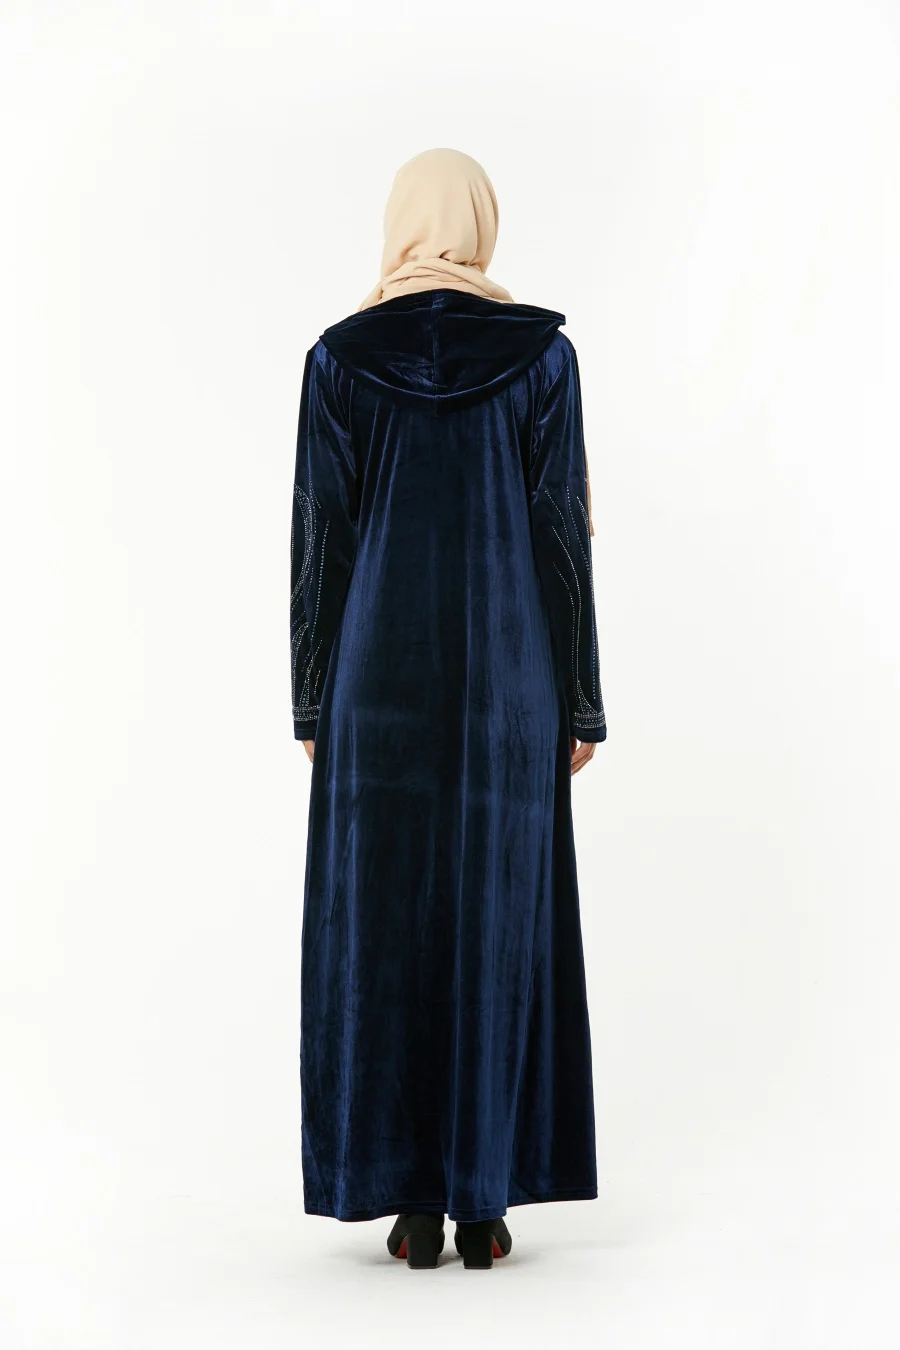 Siskakia арабское длинное платье с капюшоном вельветовое с горячей фиксацией Стразы Длинные рукава макси платья темно-синие мусульманские женские платья на молнии спереди